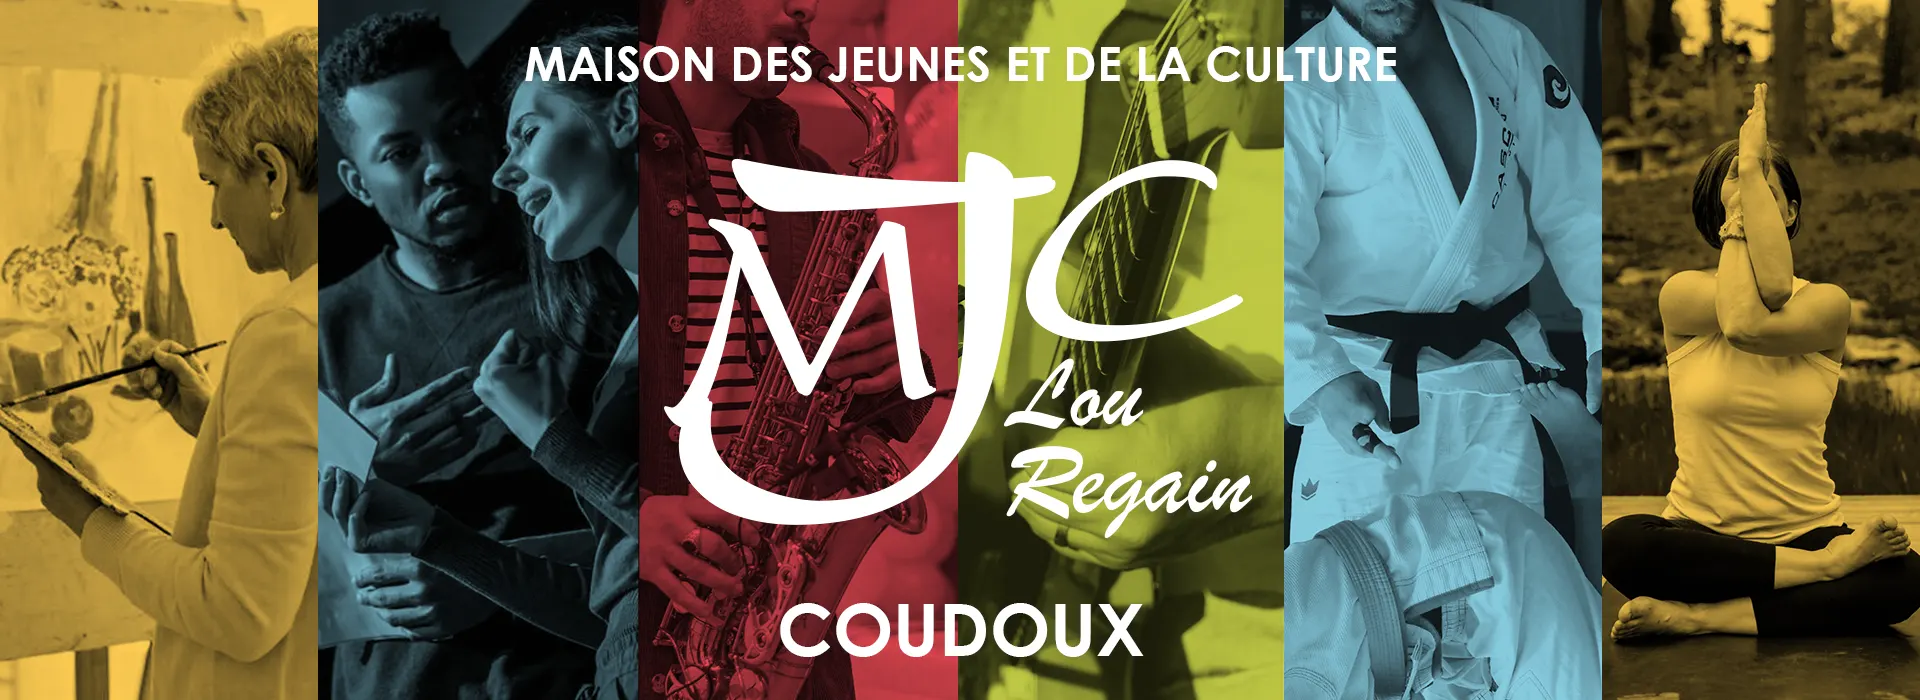 Bienvenue sur le site de l'association MJC Lou Regain de COUDOUX, vous y retrouverez notre histoire ainsi que l’ensemble de nos activités et événements...